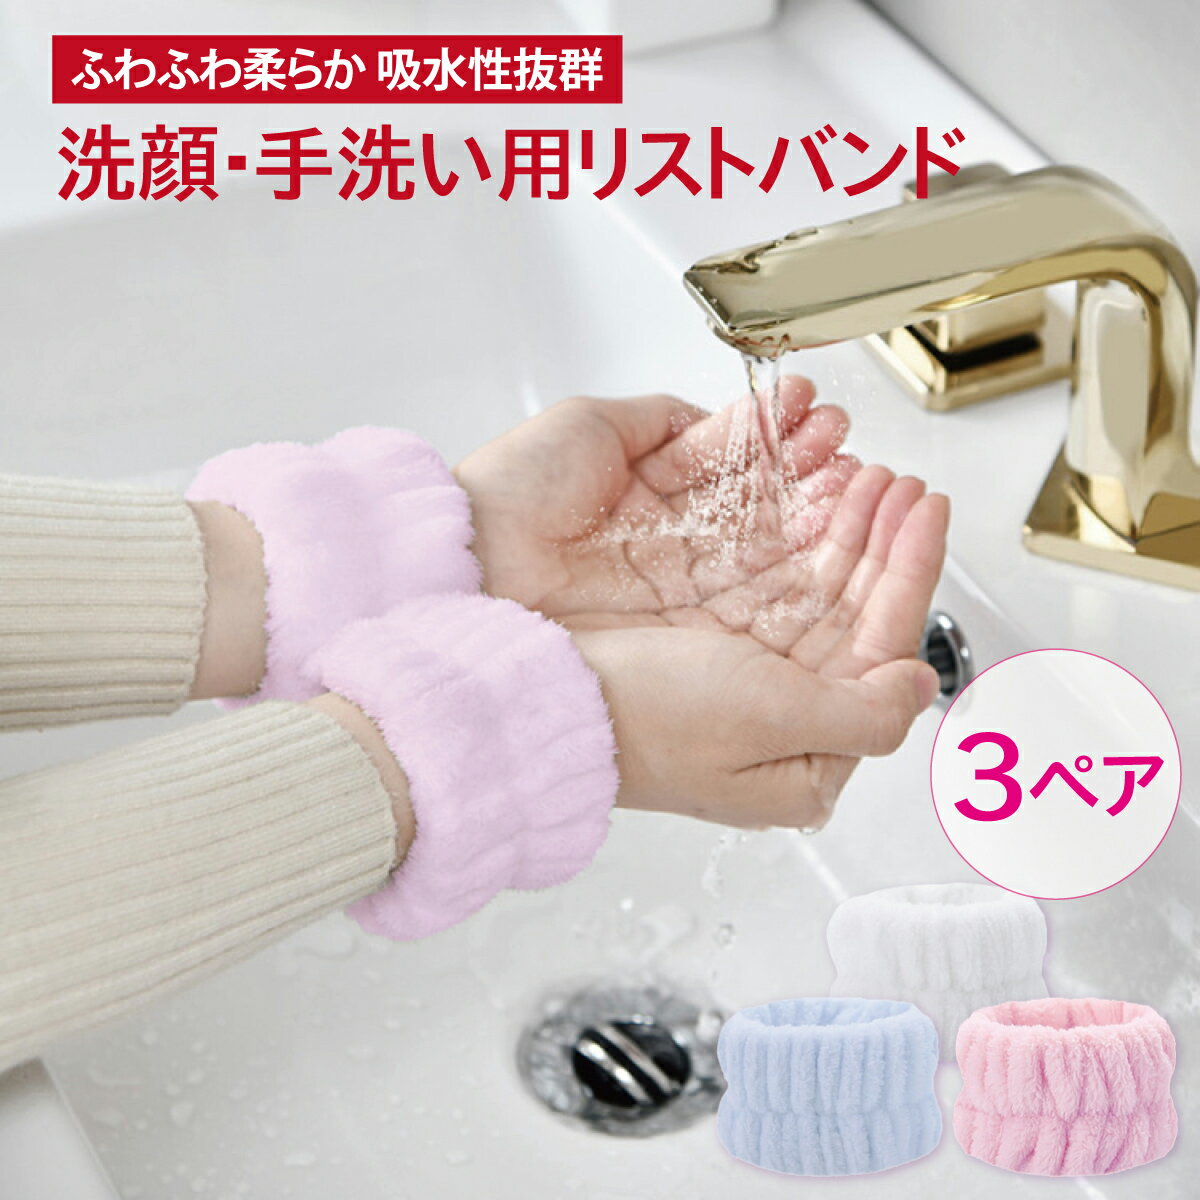 洗顔 手洗い 吸水 リストバンド 3色セット もこもこ 袖蒸れ防止 服濡れ防止 list-band-02